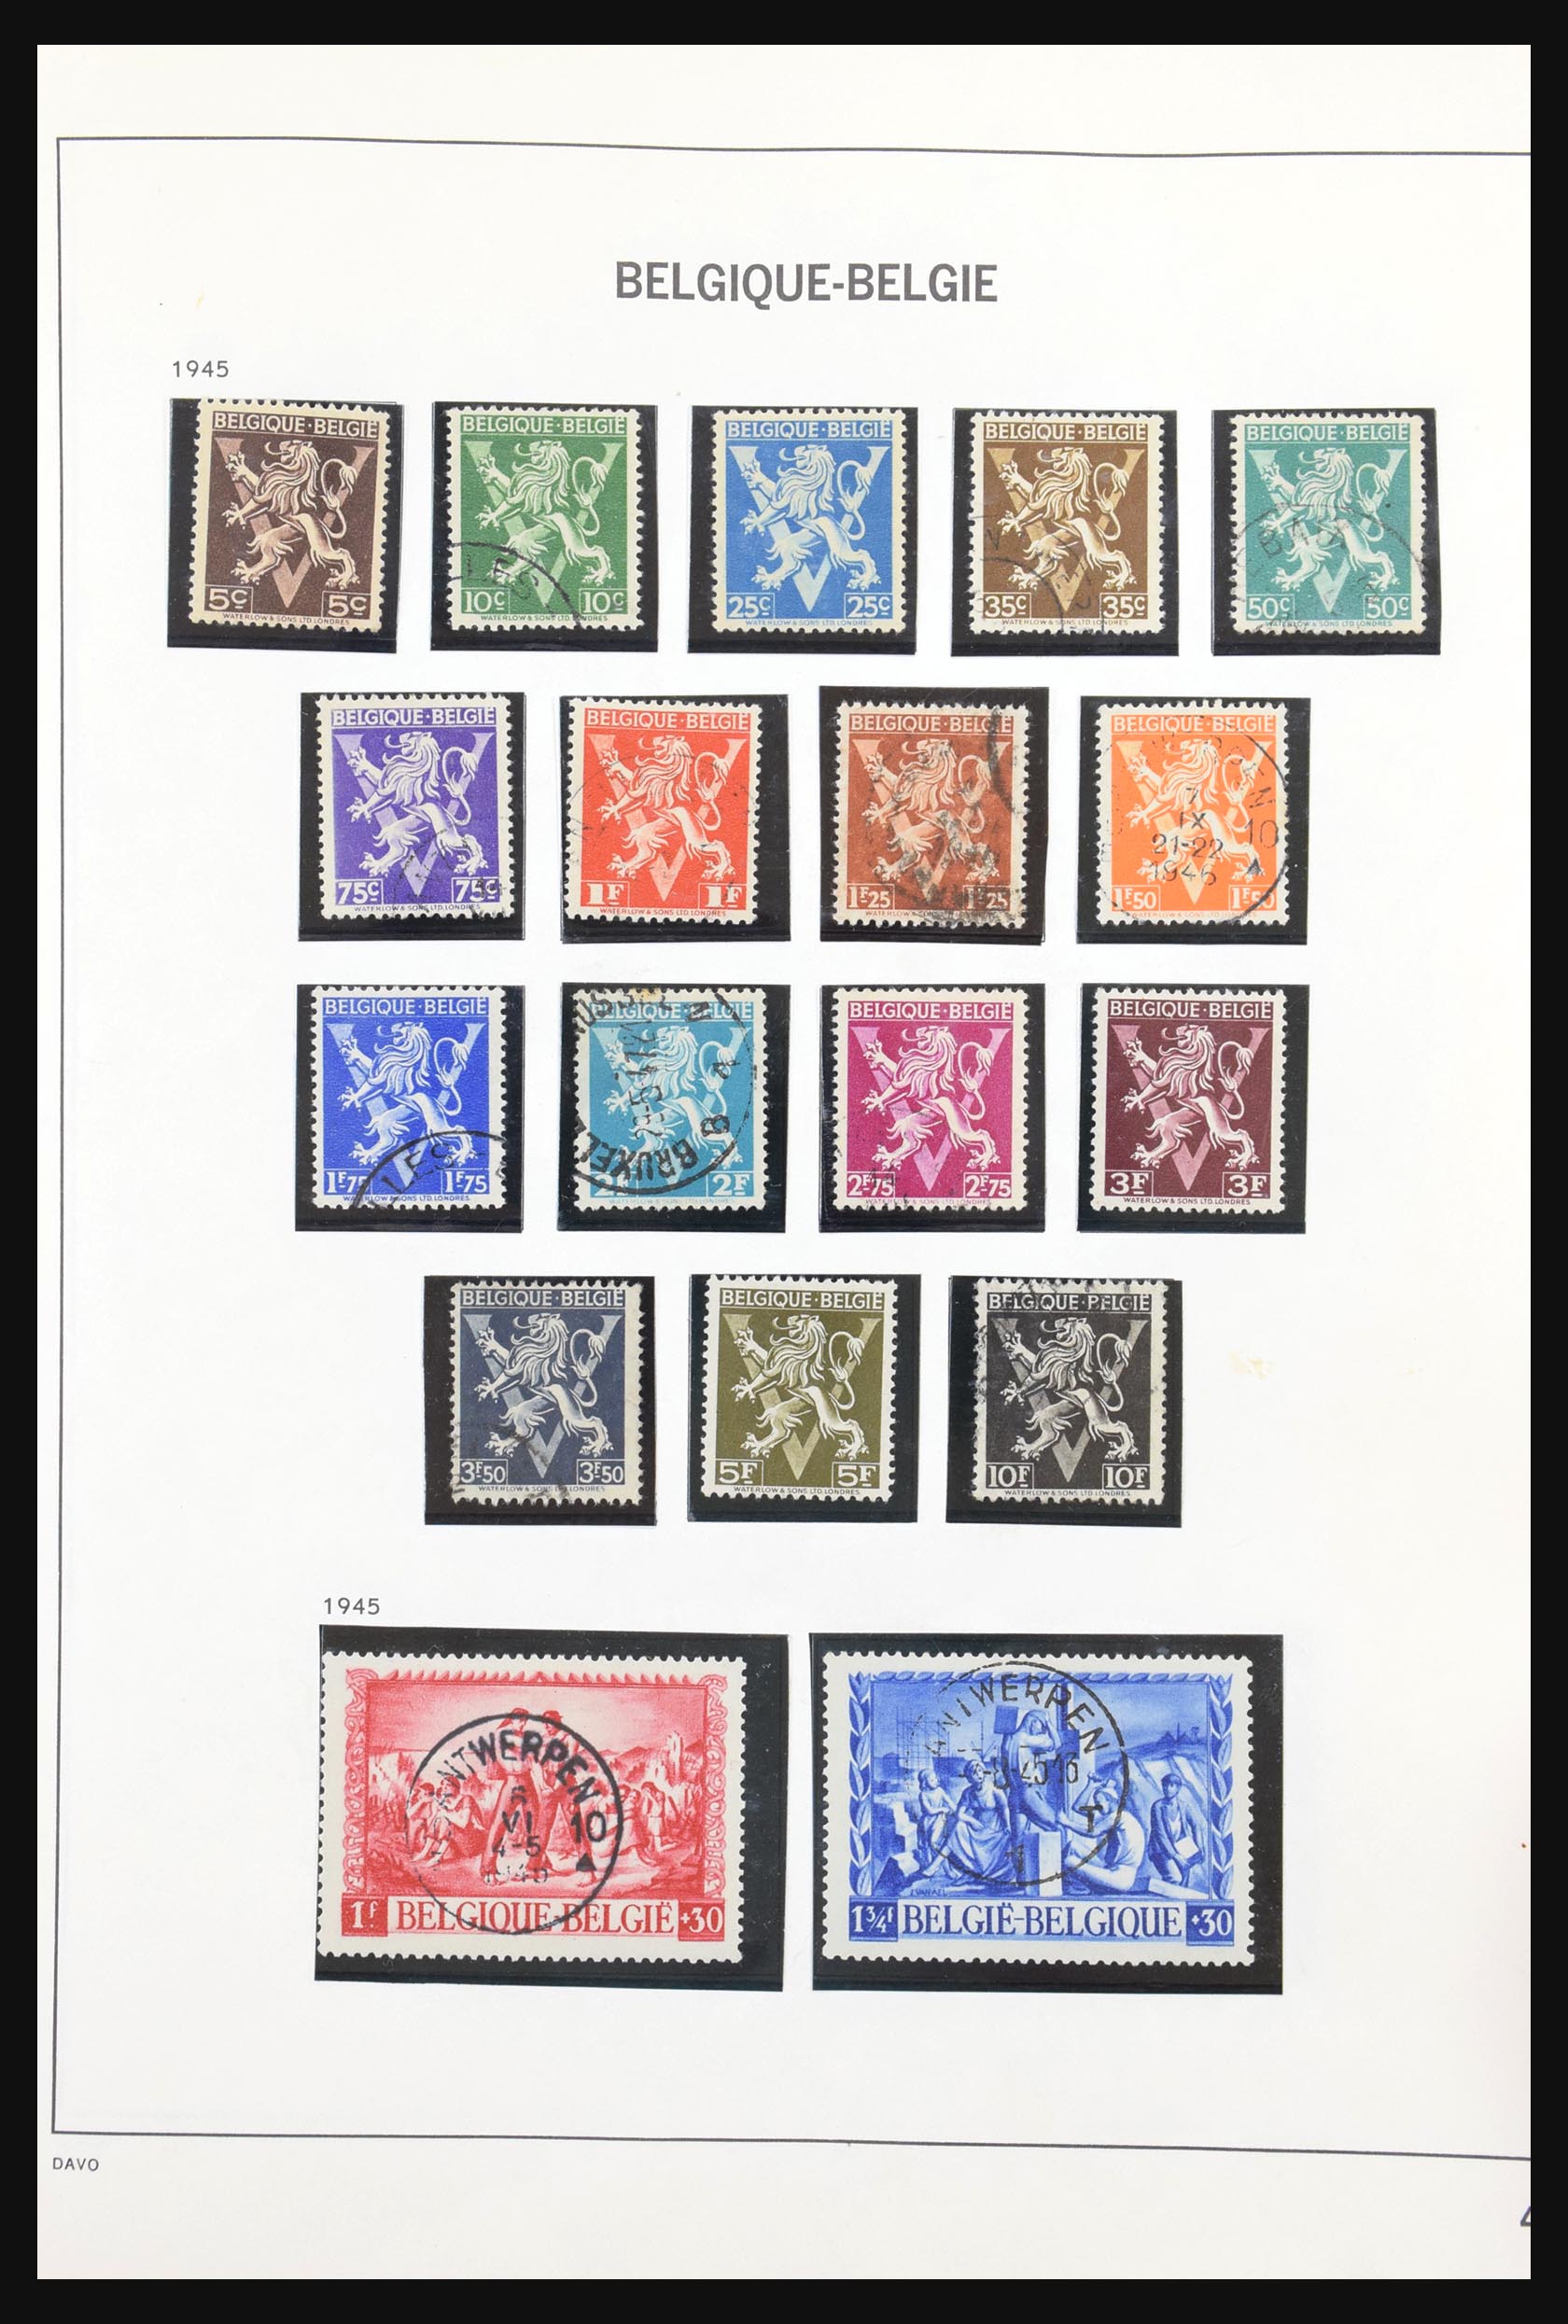 31178 147 - 31178 Belgium 1849-1951.